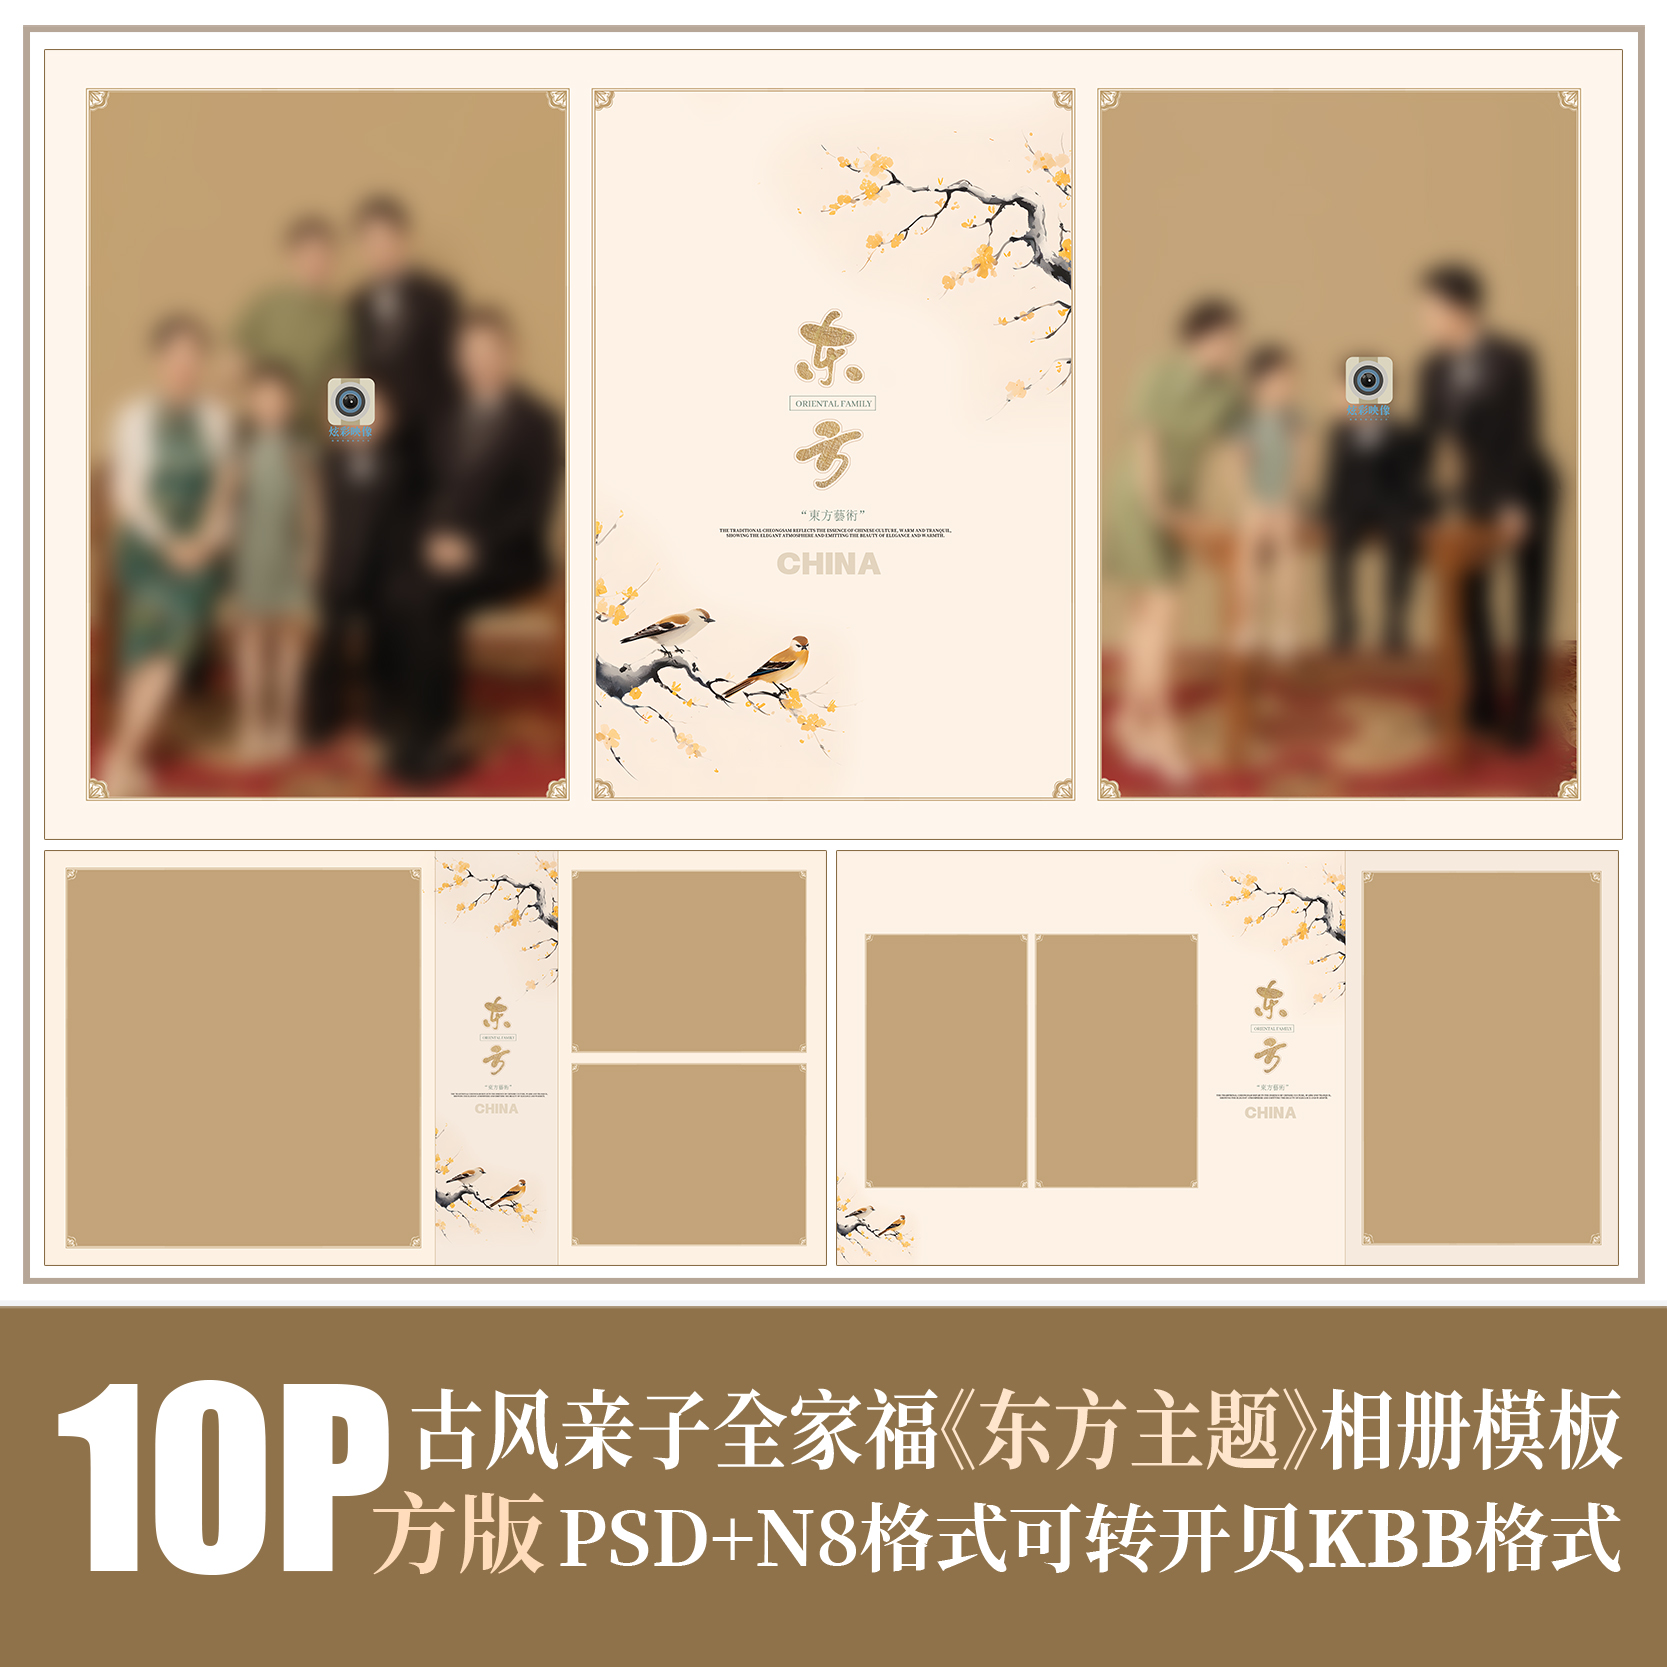 Q57全家福亲子PSD相册模版新中式旗袍古风工笔画摄影楼N8排版素材